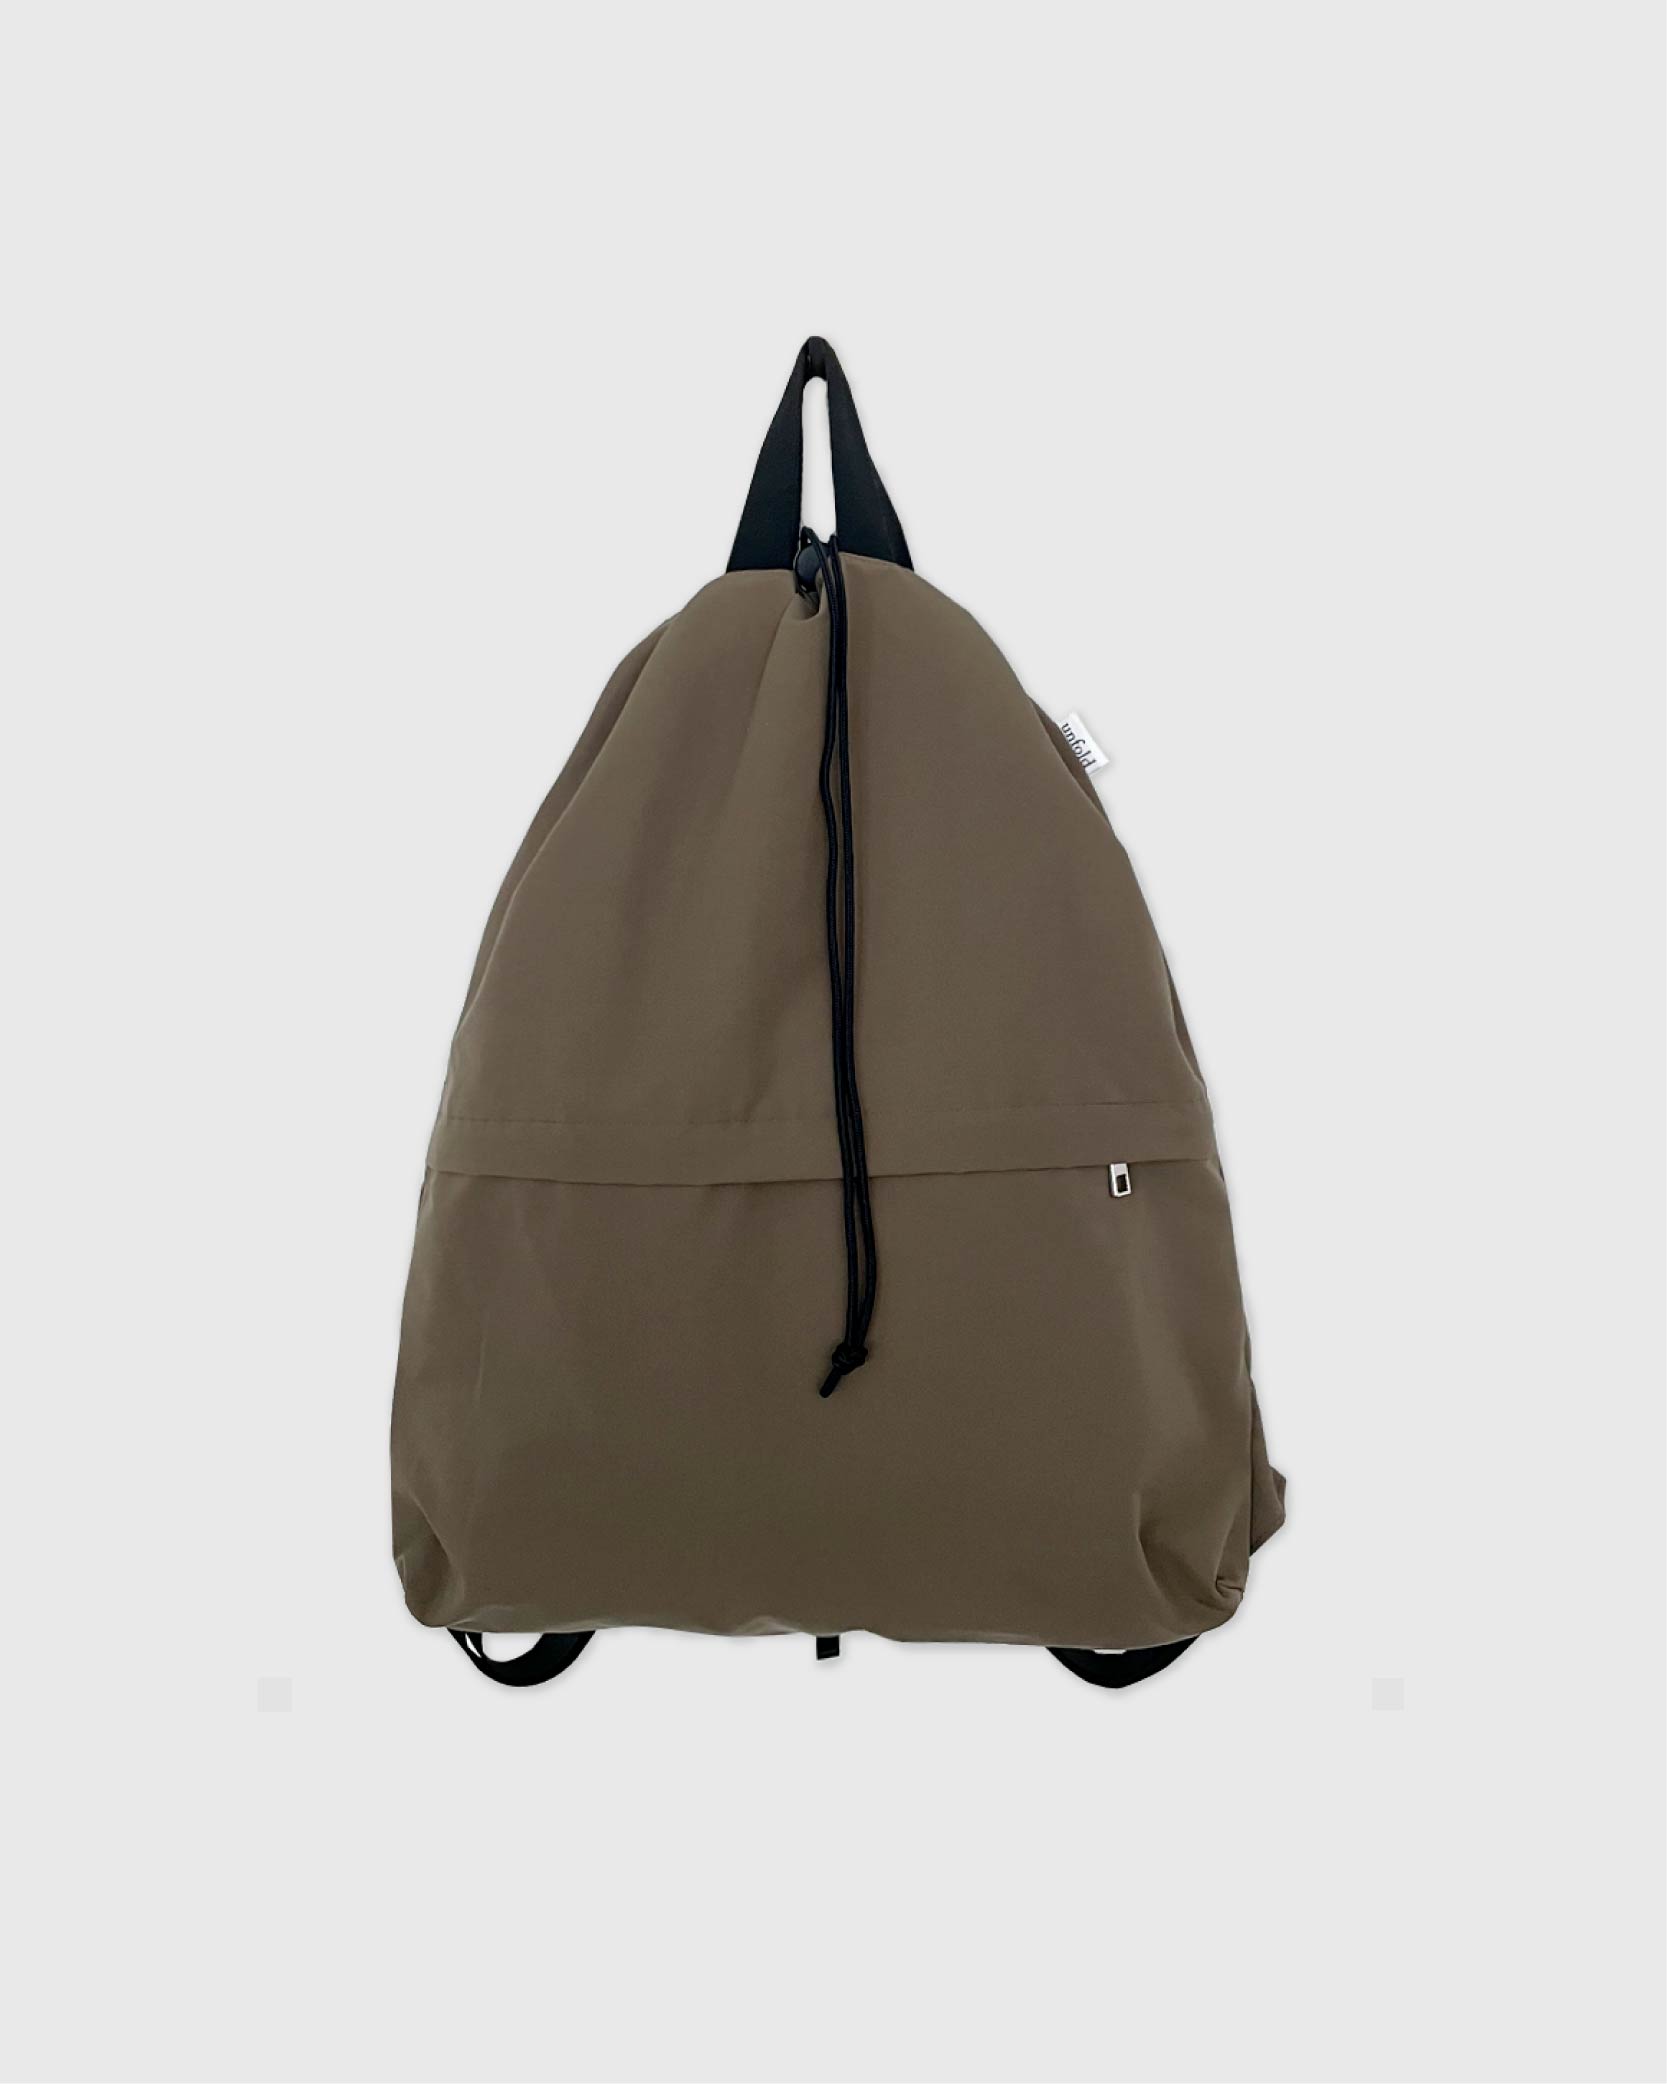 언폴드,unfold,에코백,파우치,천가방,친환경가방,String backpack (khaki-brown)